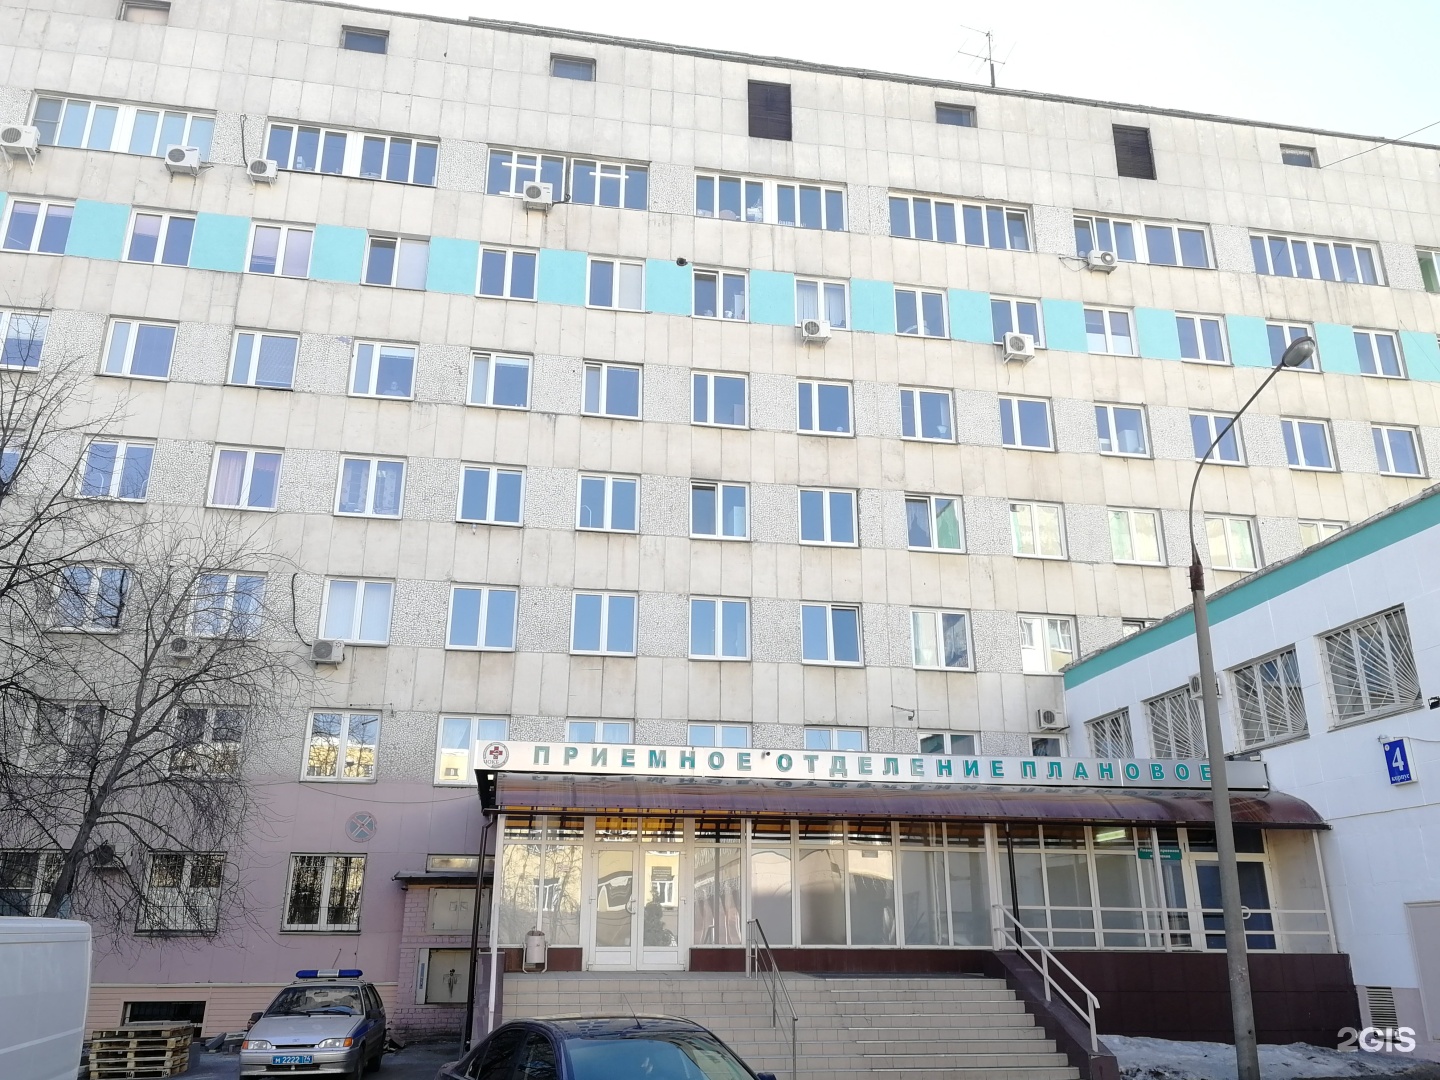 ЧОДКБ Челябинская областная детская клиническая больница